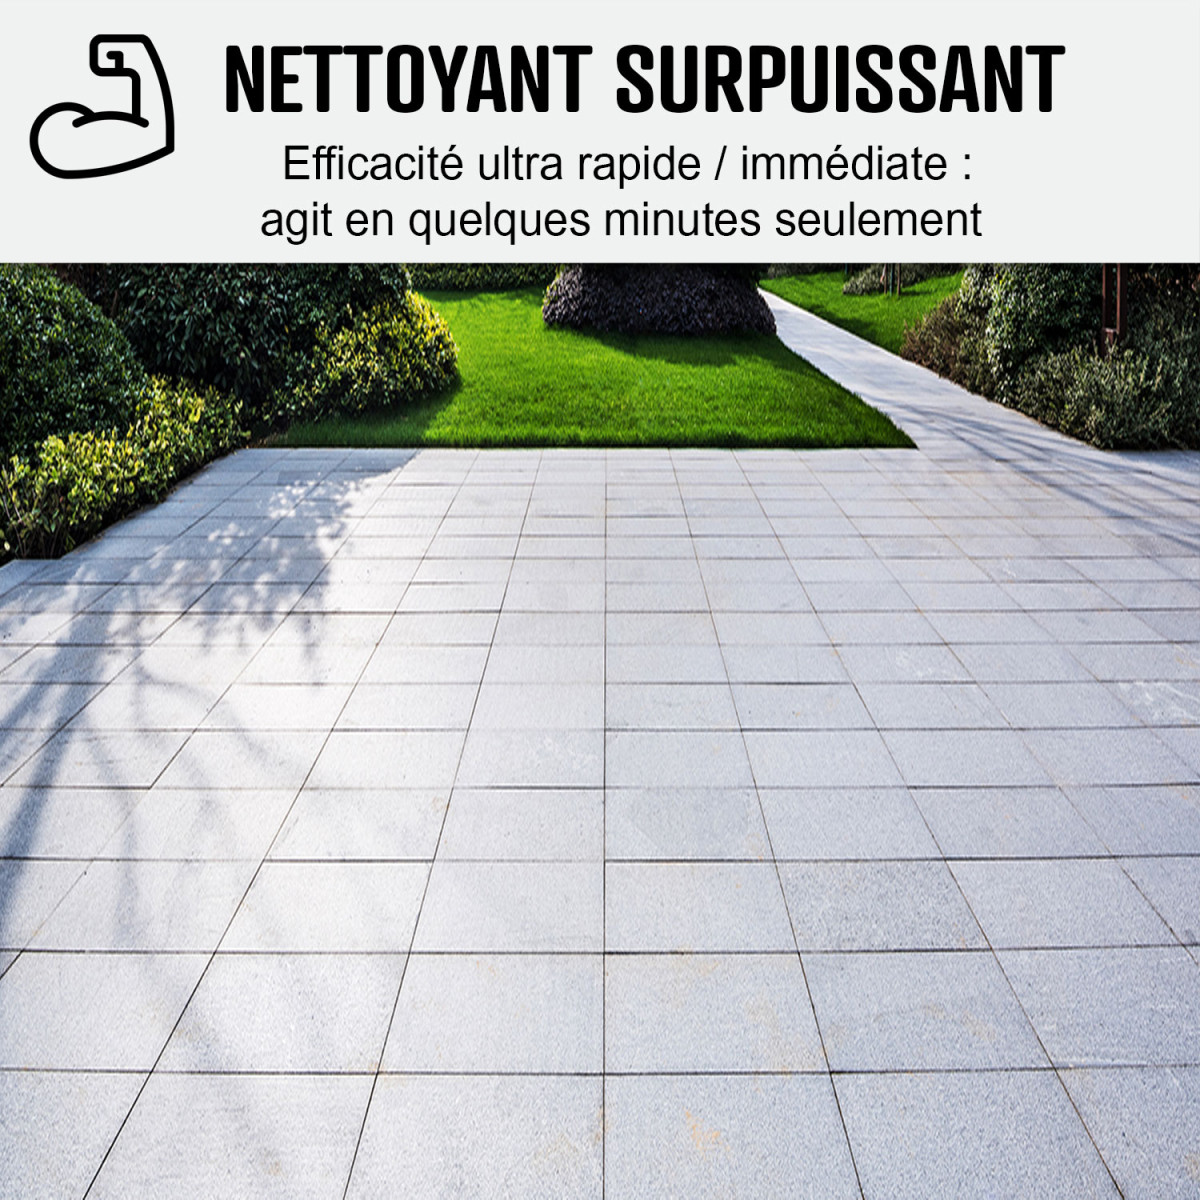 Nettoyant terrasse NET'SOL